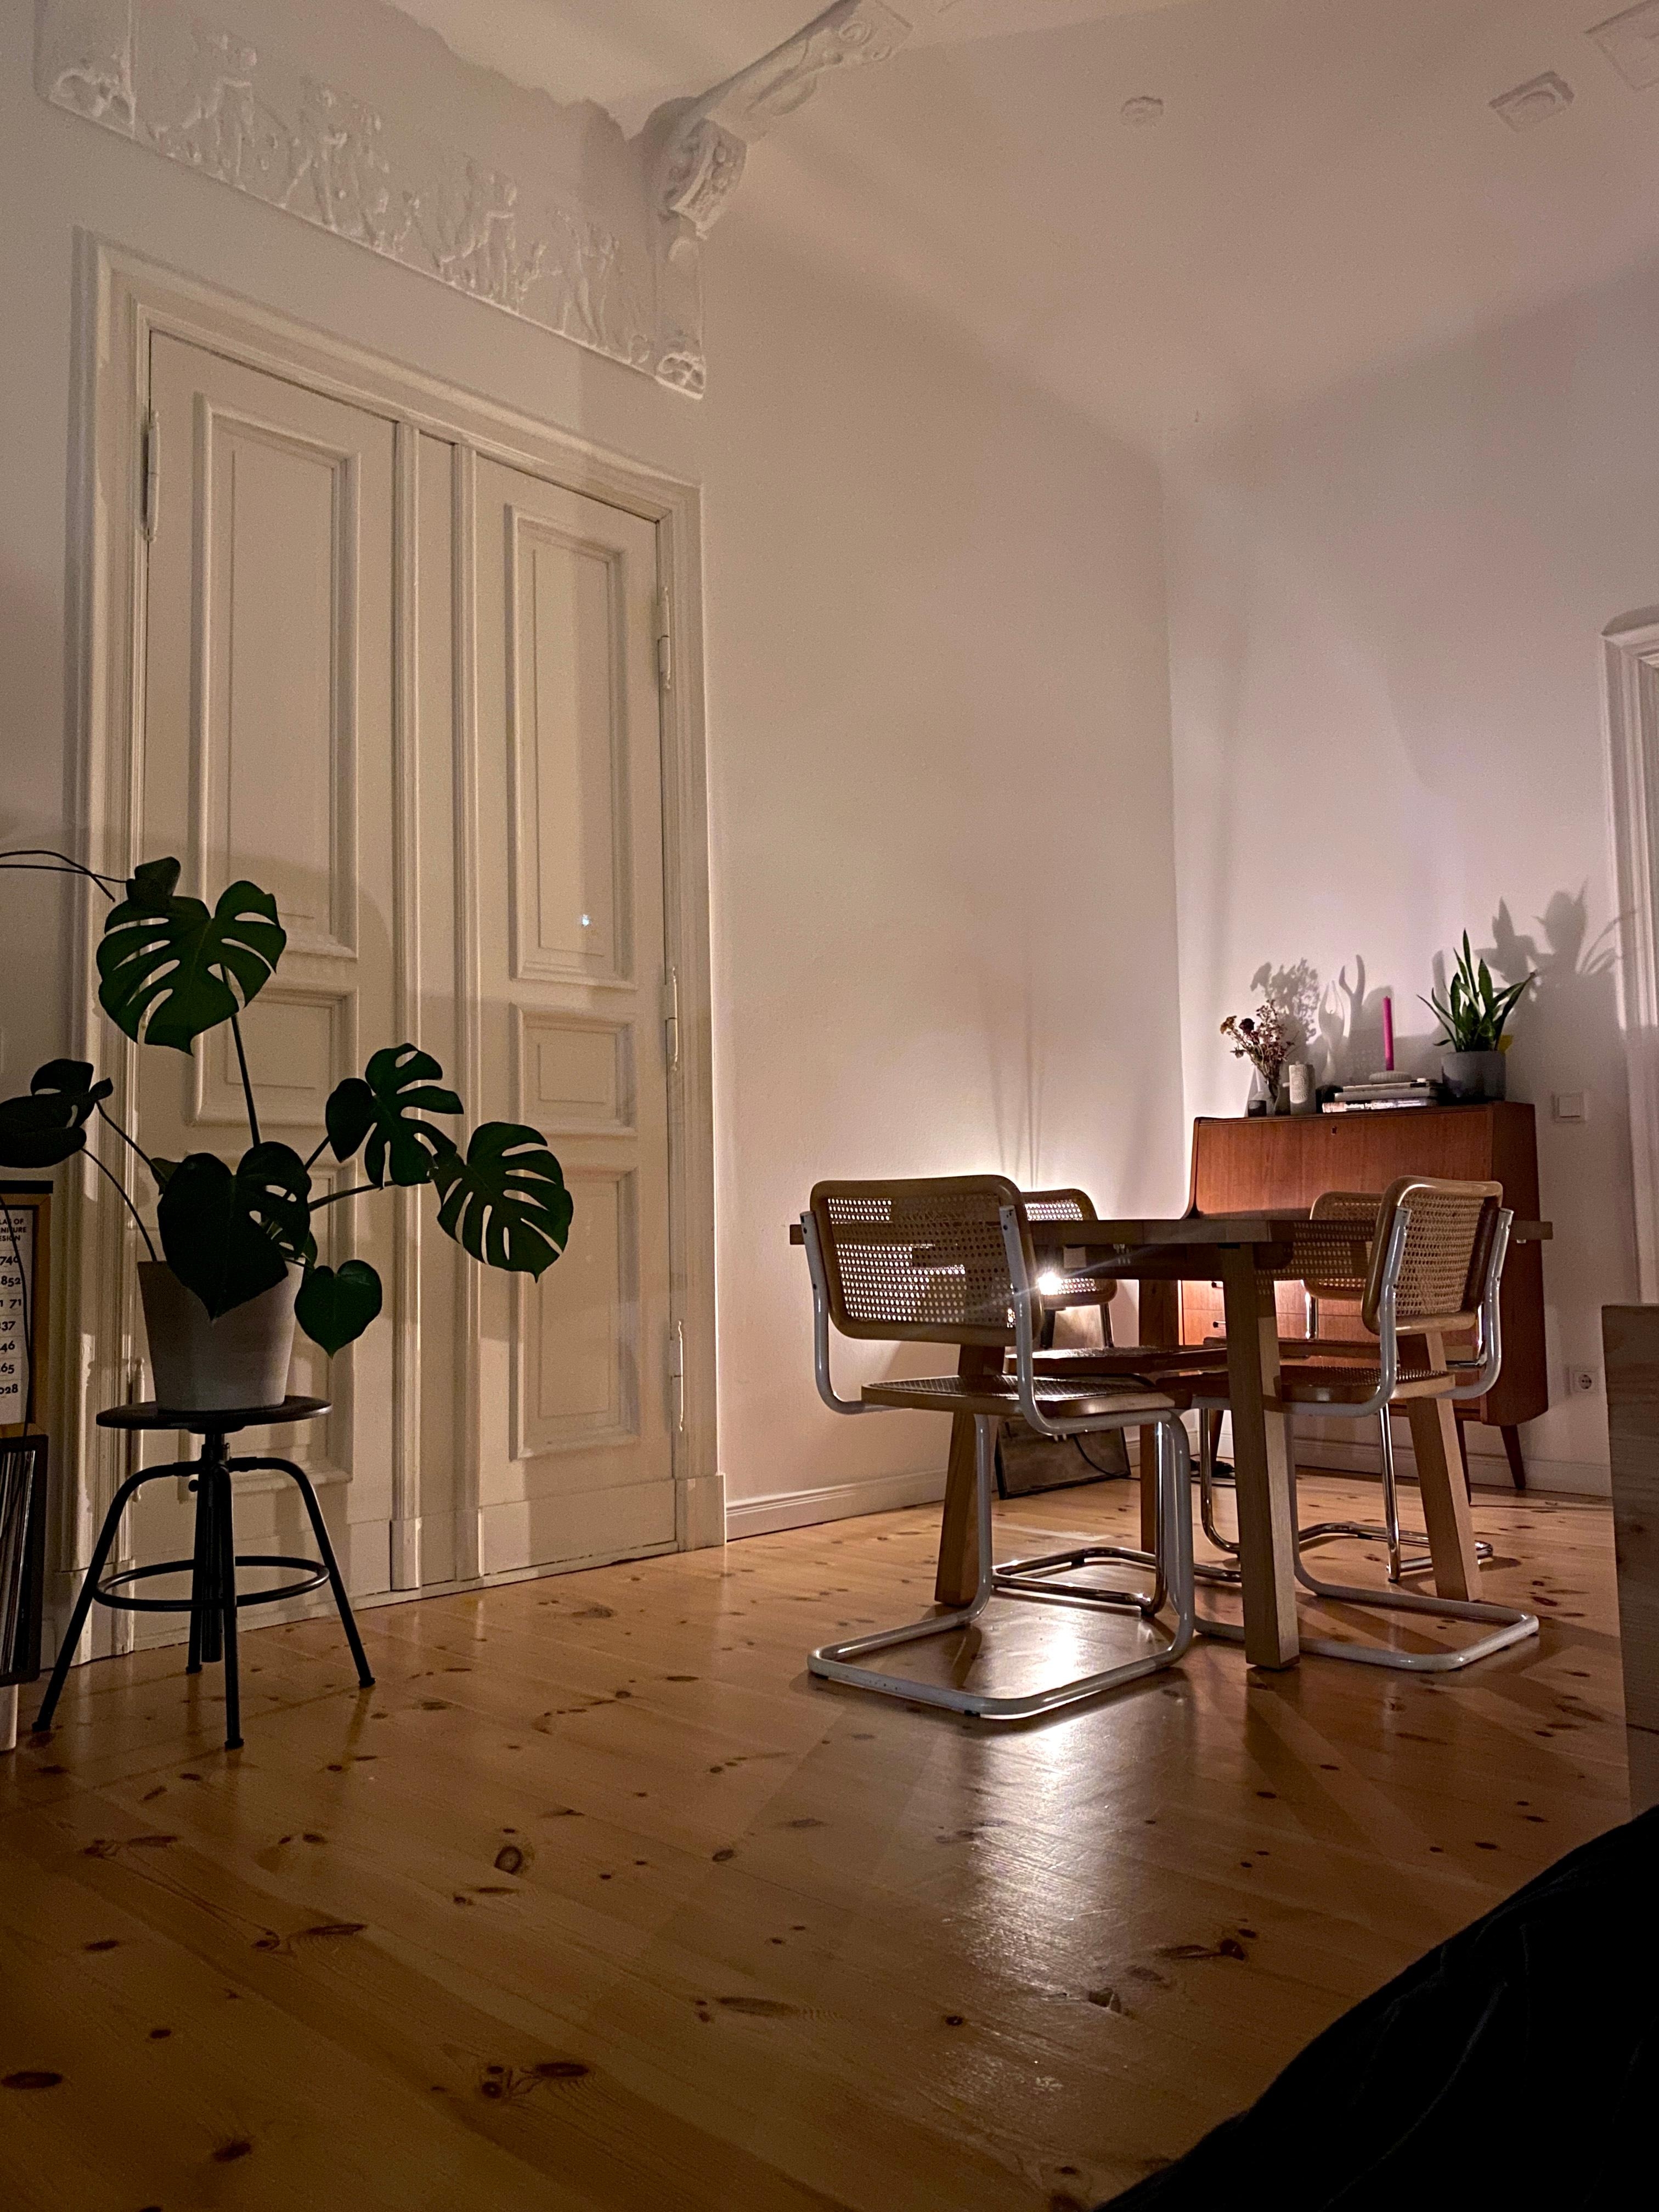 Gemütliche Abendstimmung am Sonntag. 

#wohnzimmer #altbau #vintage #cozy #wood #couchliebt #couchstyle